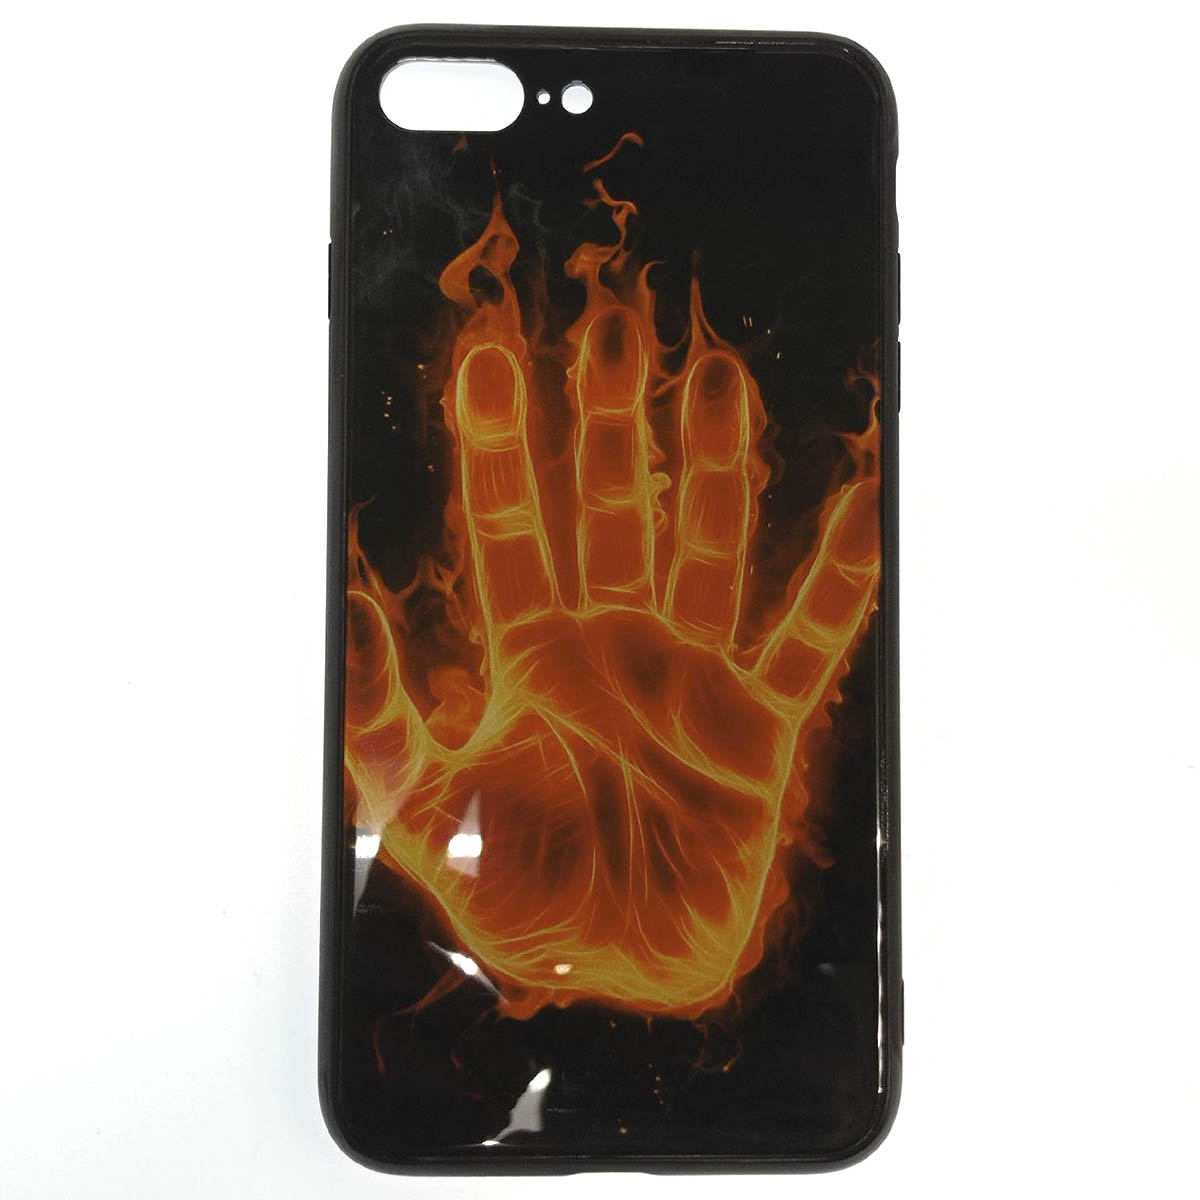 Чехол накладка для APPLE iPhone 7, 8 Plus, силикон, рисунок Ладонь, огонь.